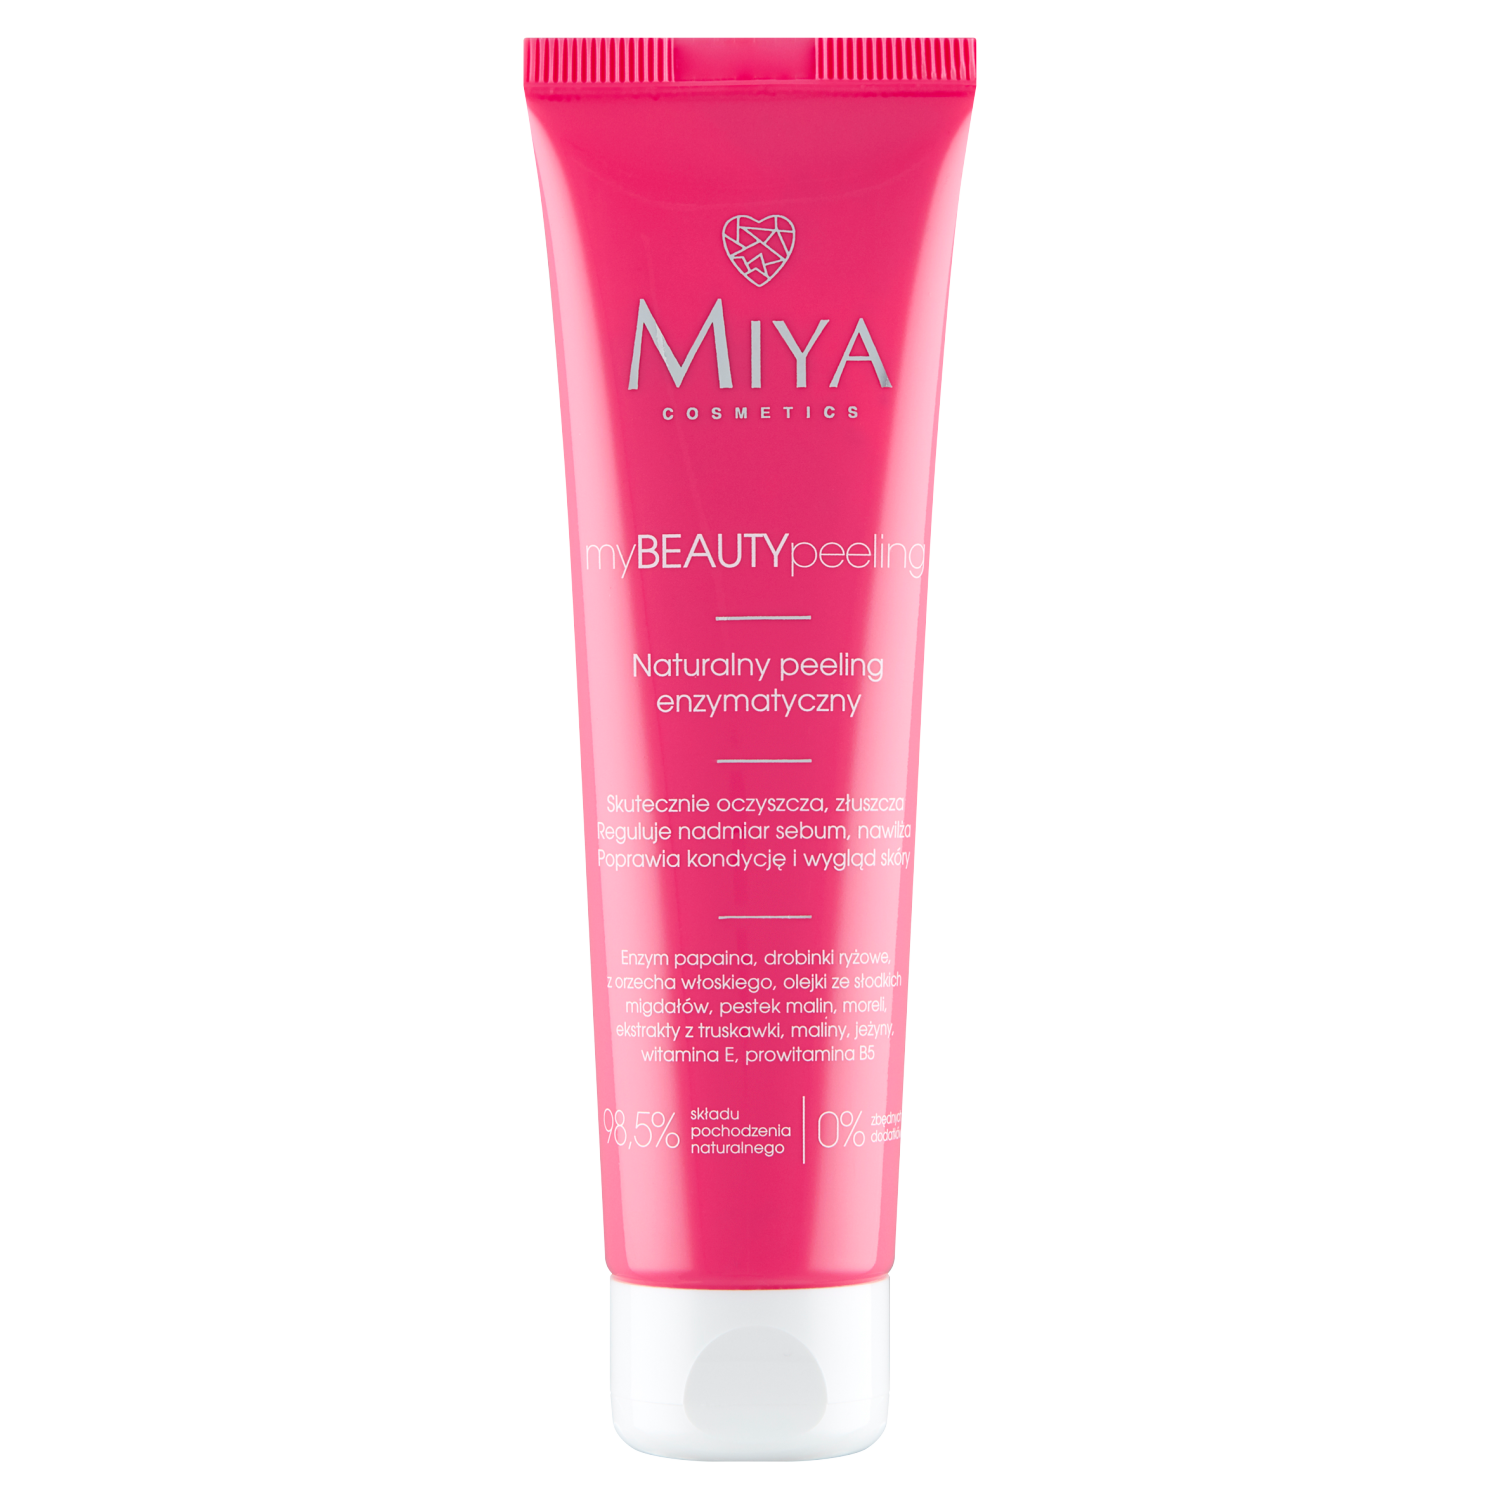 Miya Cosmetics myBEAUTYpeeling